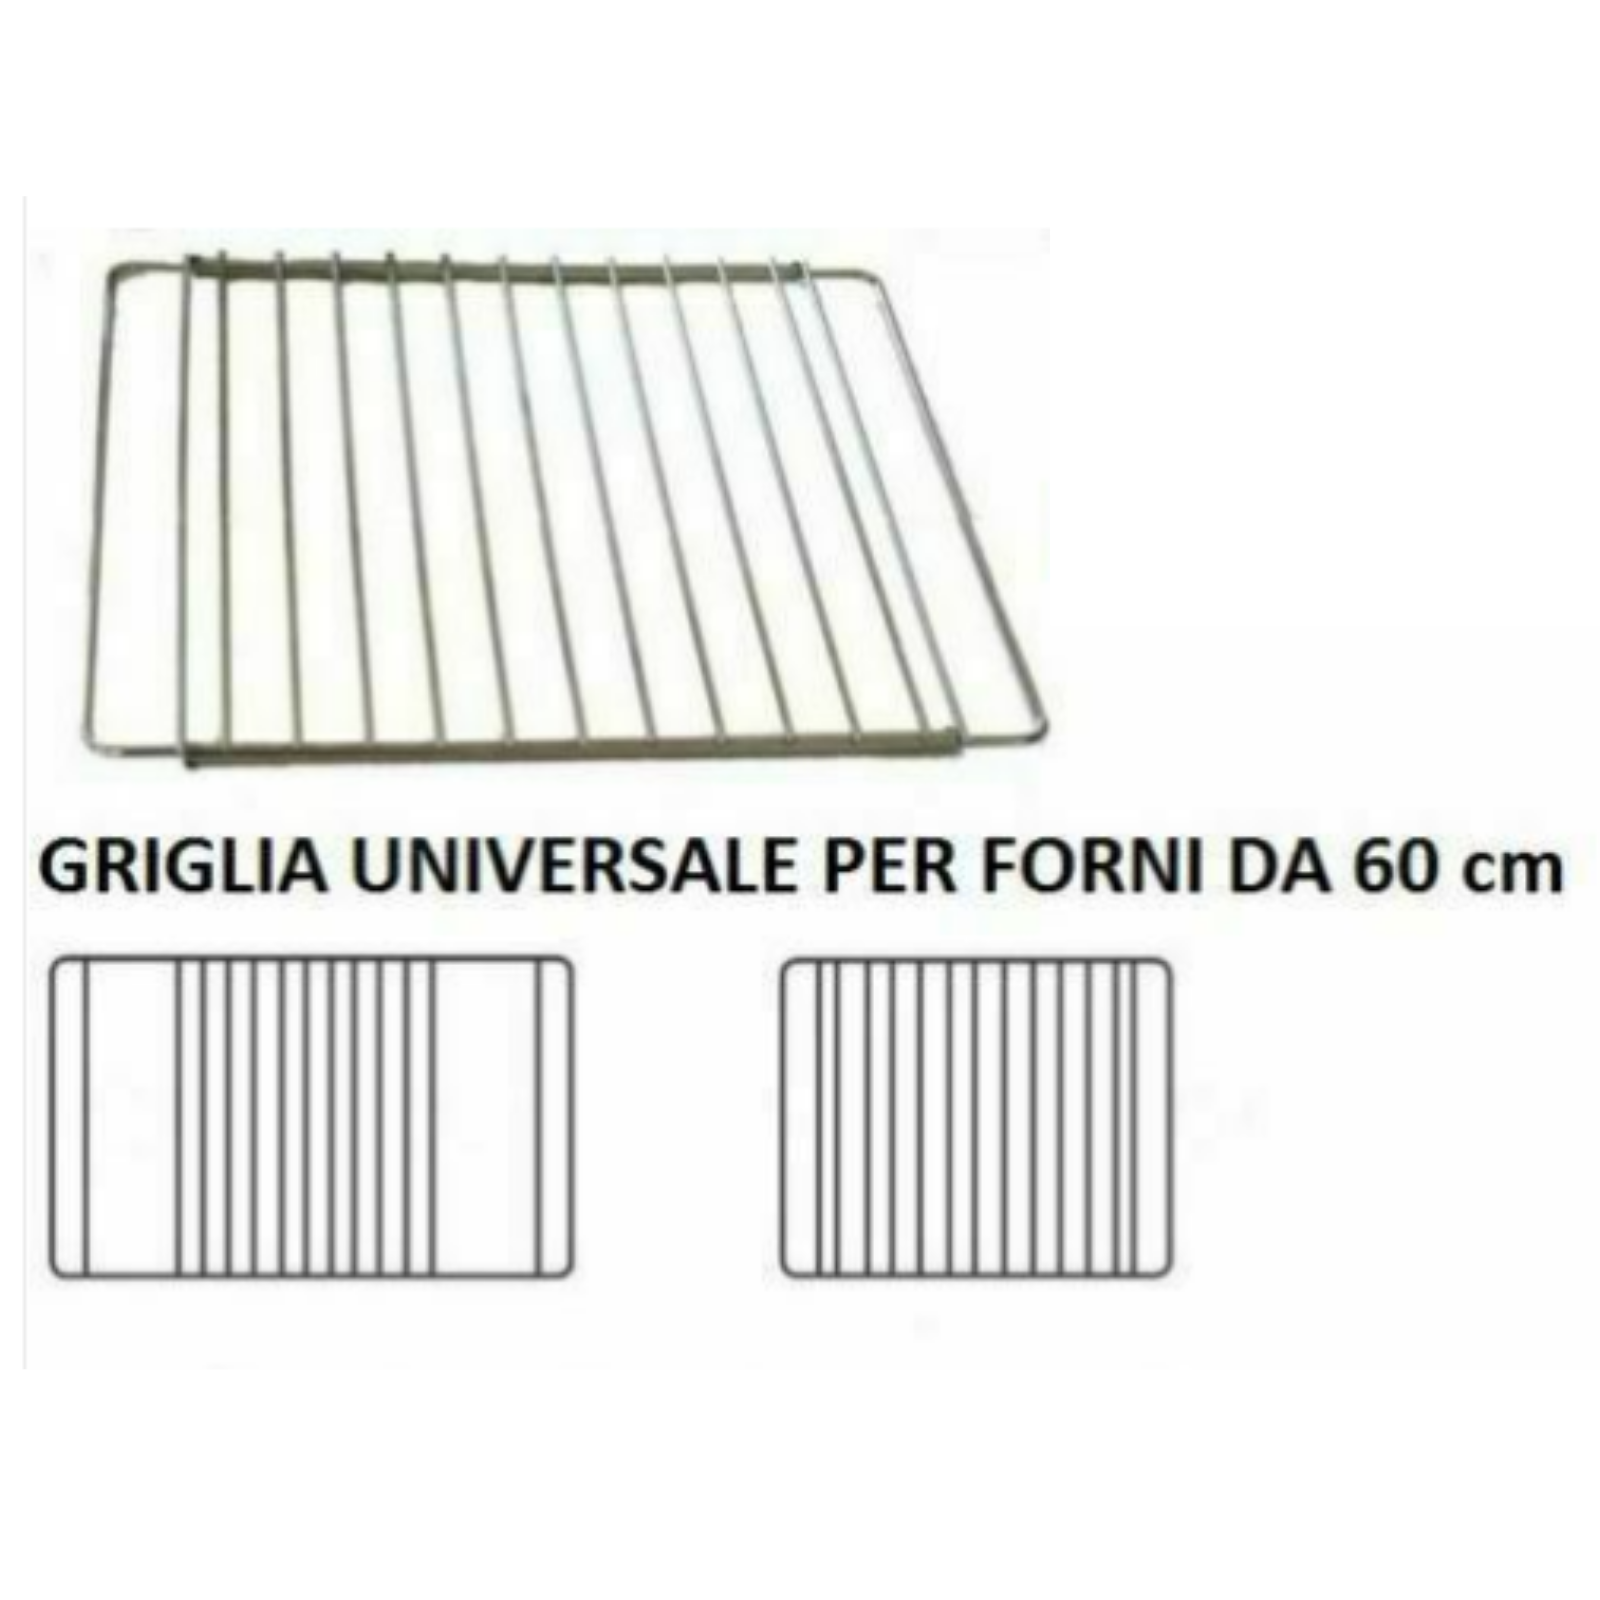 GRIGLIA RIPIANO REGOLABILE PER FORNO DA 60 cm - UNIVERSALE - ACCIAIO  CROMATO - Rossi Ricambi